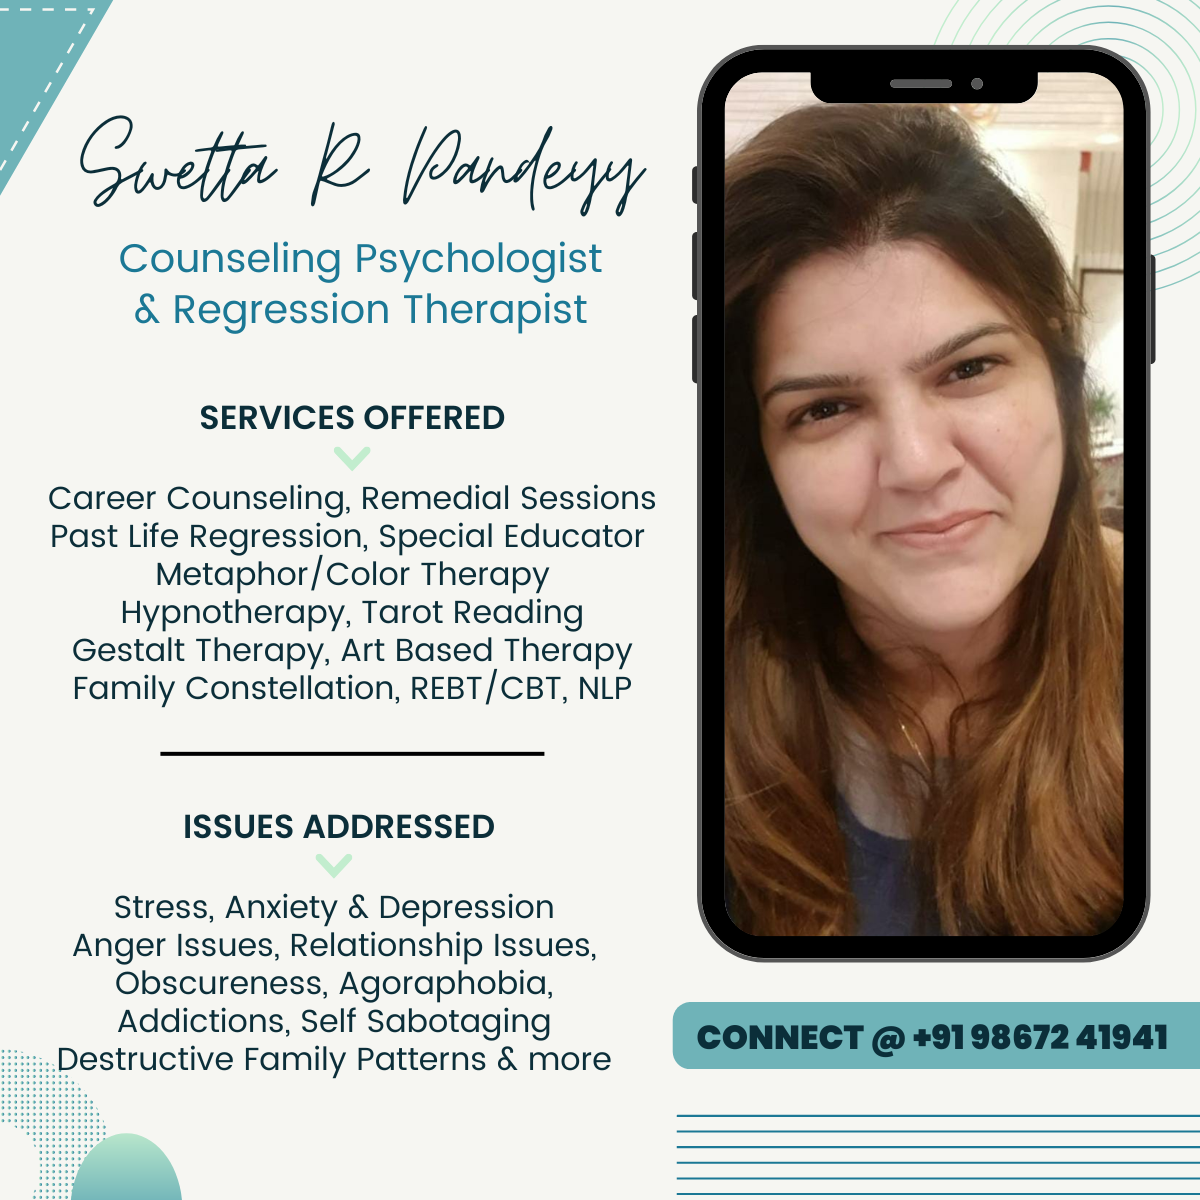 Sweta R Pandey - Counselling Psychologist & Regression Therapist- Rishikesh